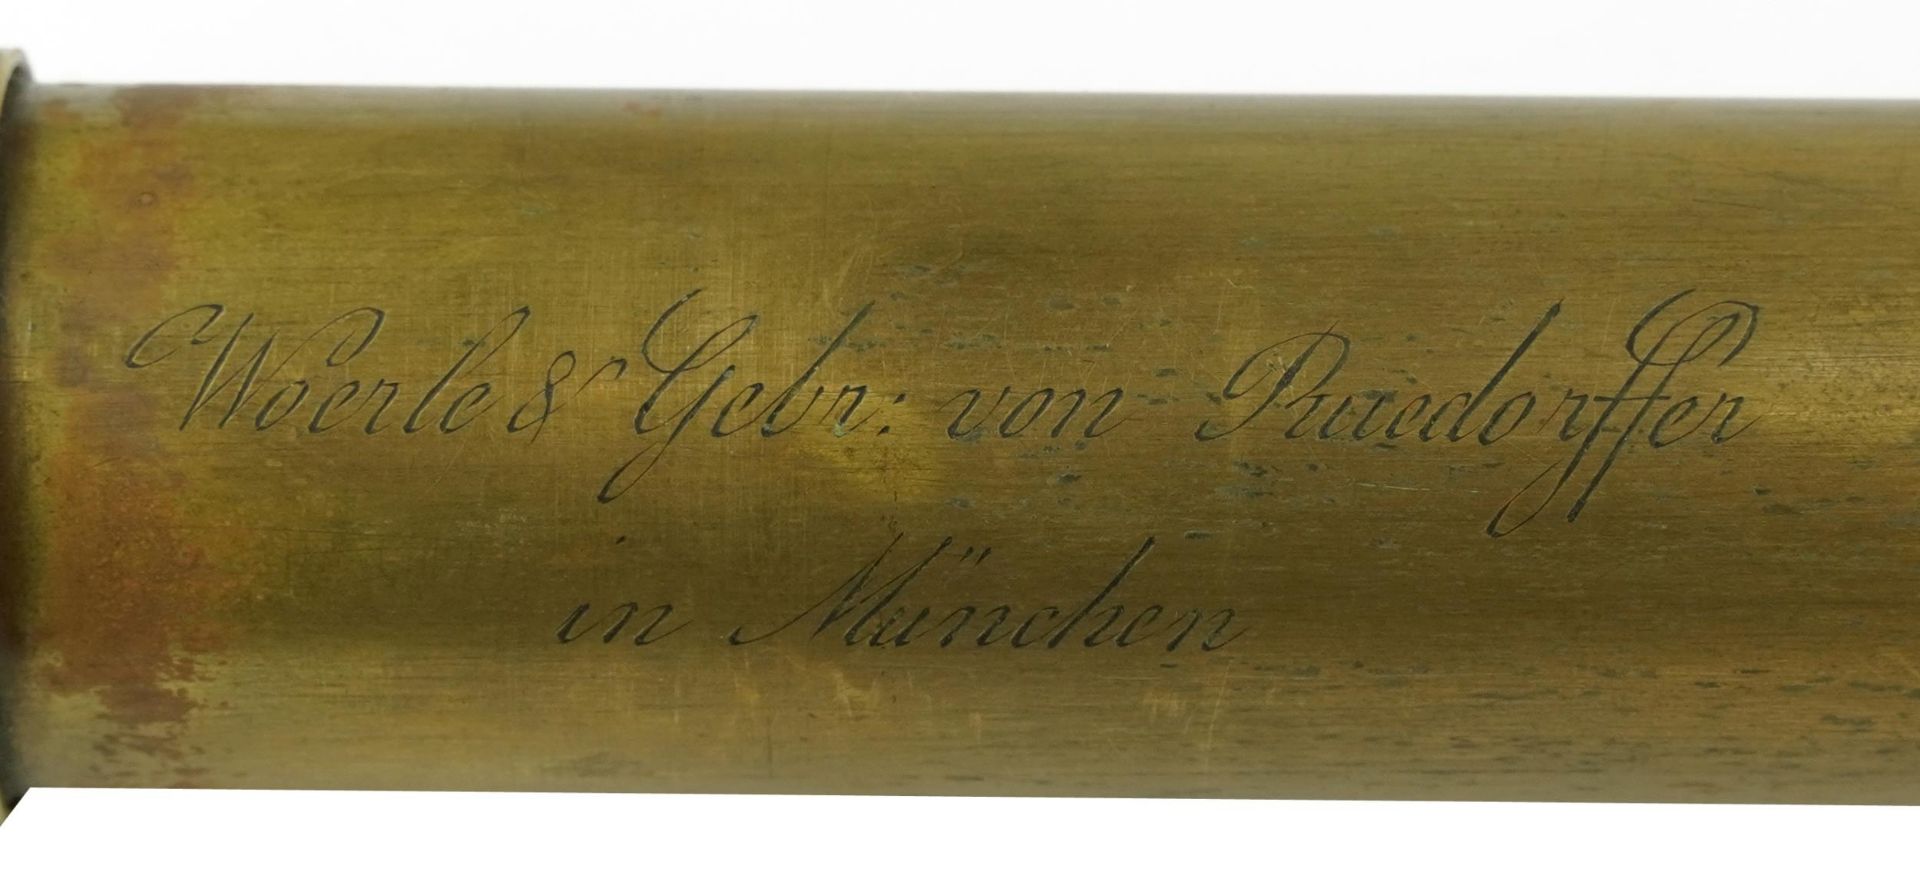 19th century German mahogany bound four draw brass telescope engraved Woerle & Gebr von Ruedorffer - Image 3 of 3